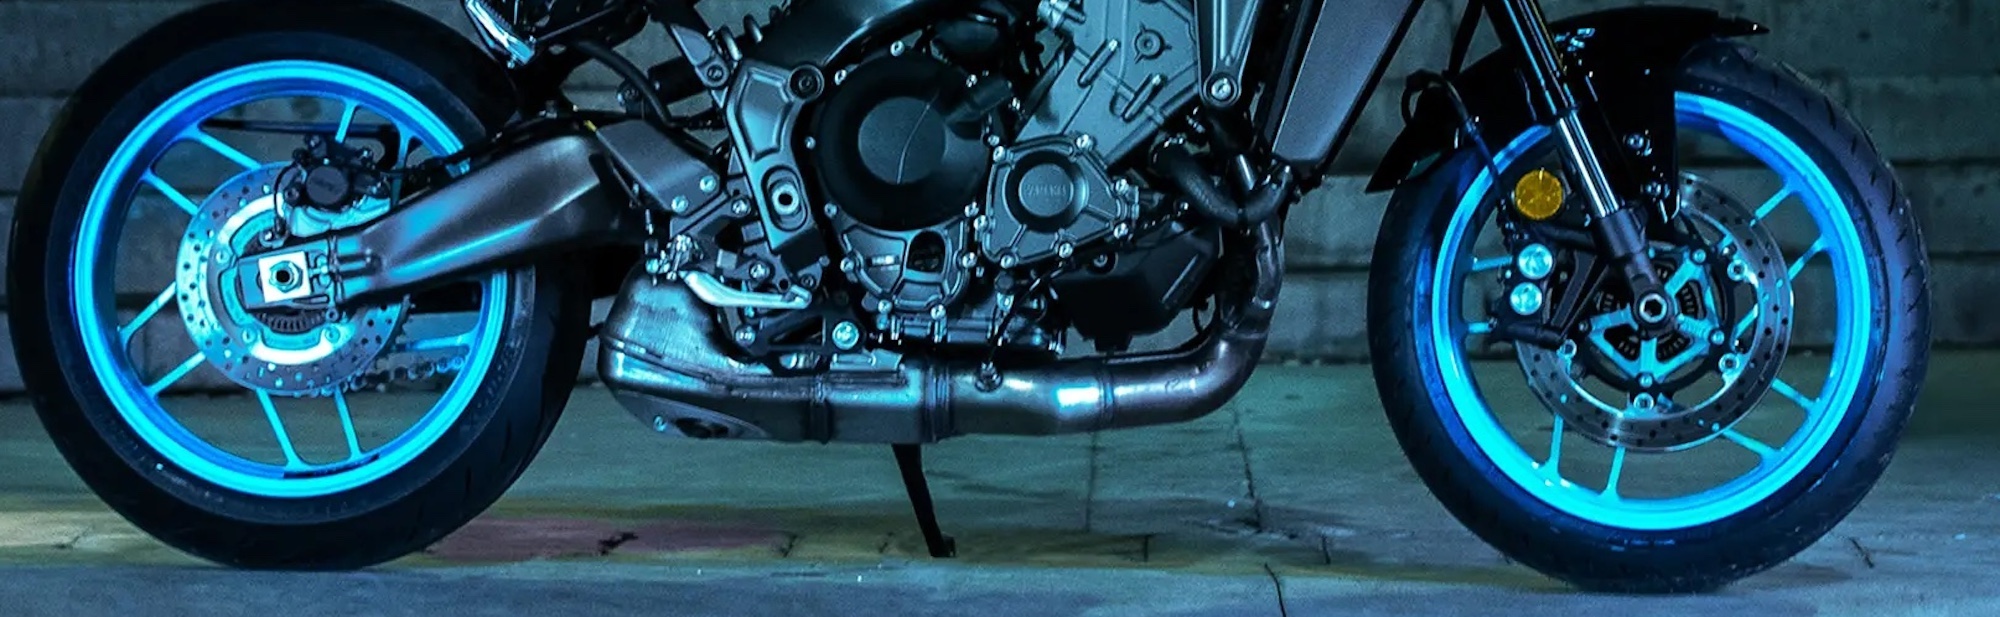 The bottom portion of Yamaha's MT-09.